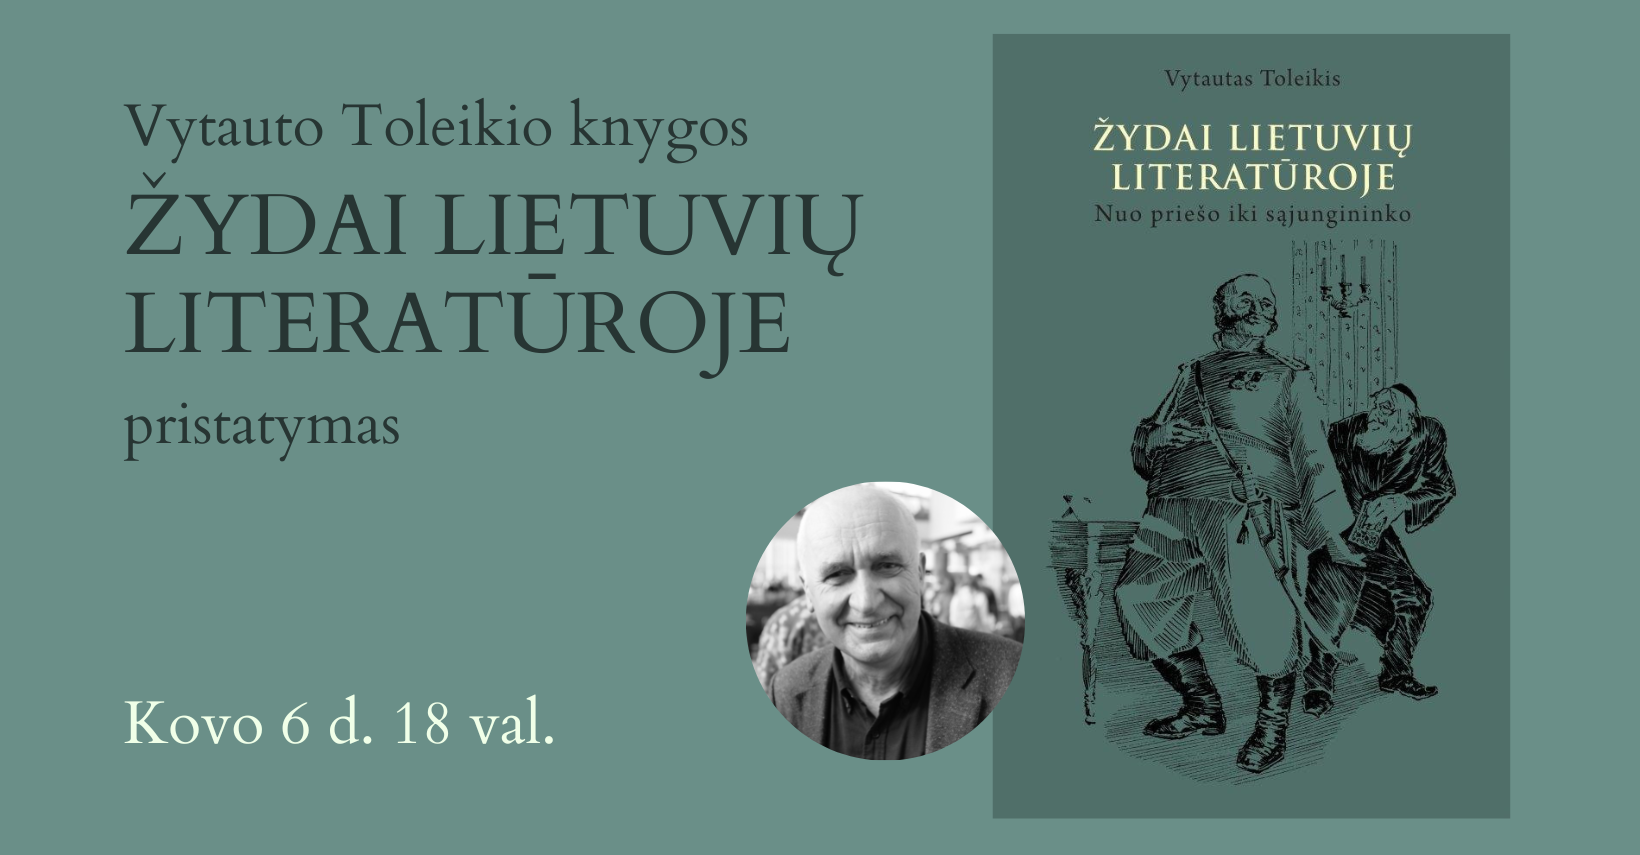 Vytauto Toleikio knygos „Žydai lietuvių literatūroje“ pristatymas